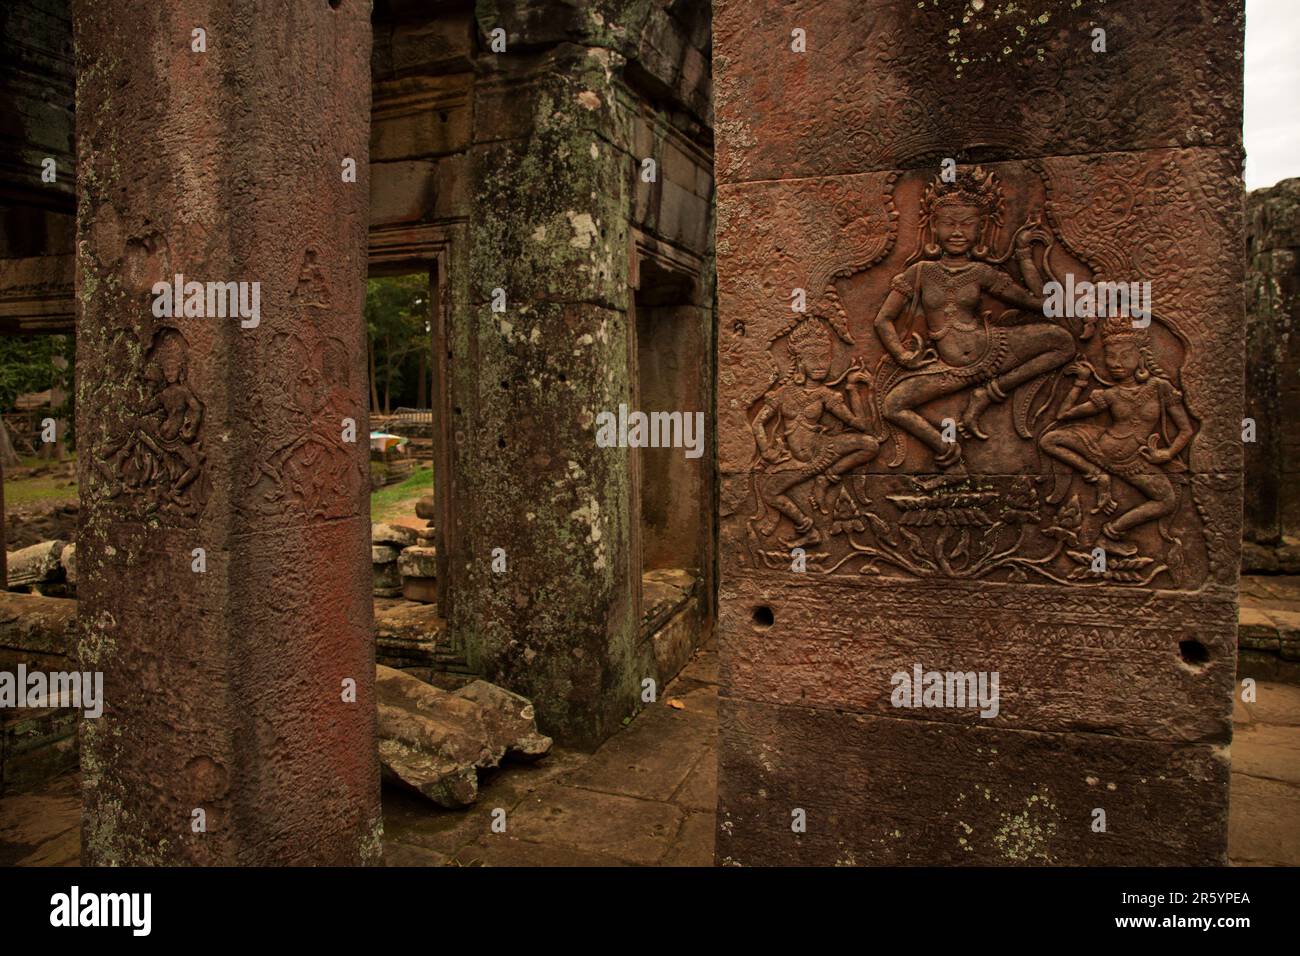 Der Bayon ist ein reich dekorierter buddhistischer Khmer-Tempel in Angkor Thom. Das Bayon'sche Merkmal sind die ruhigen, lächelnden Gesichter. Stockfoto